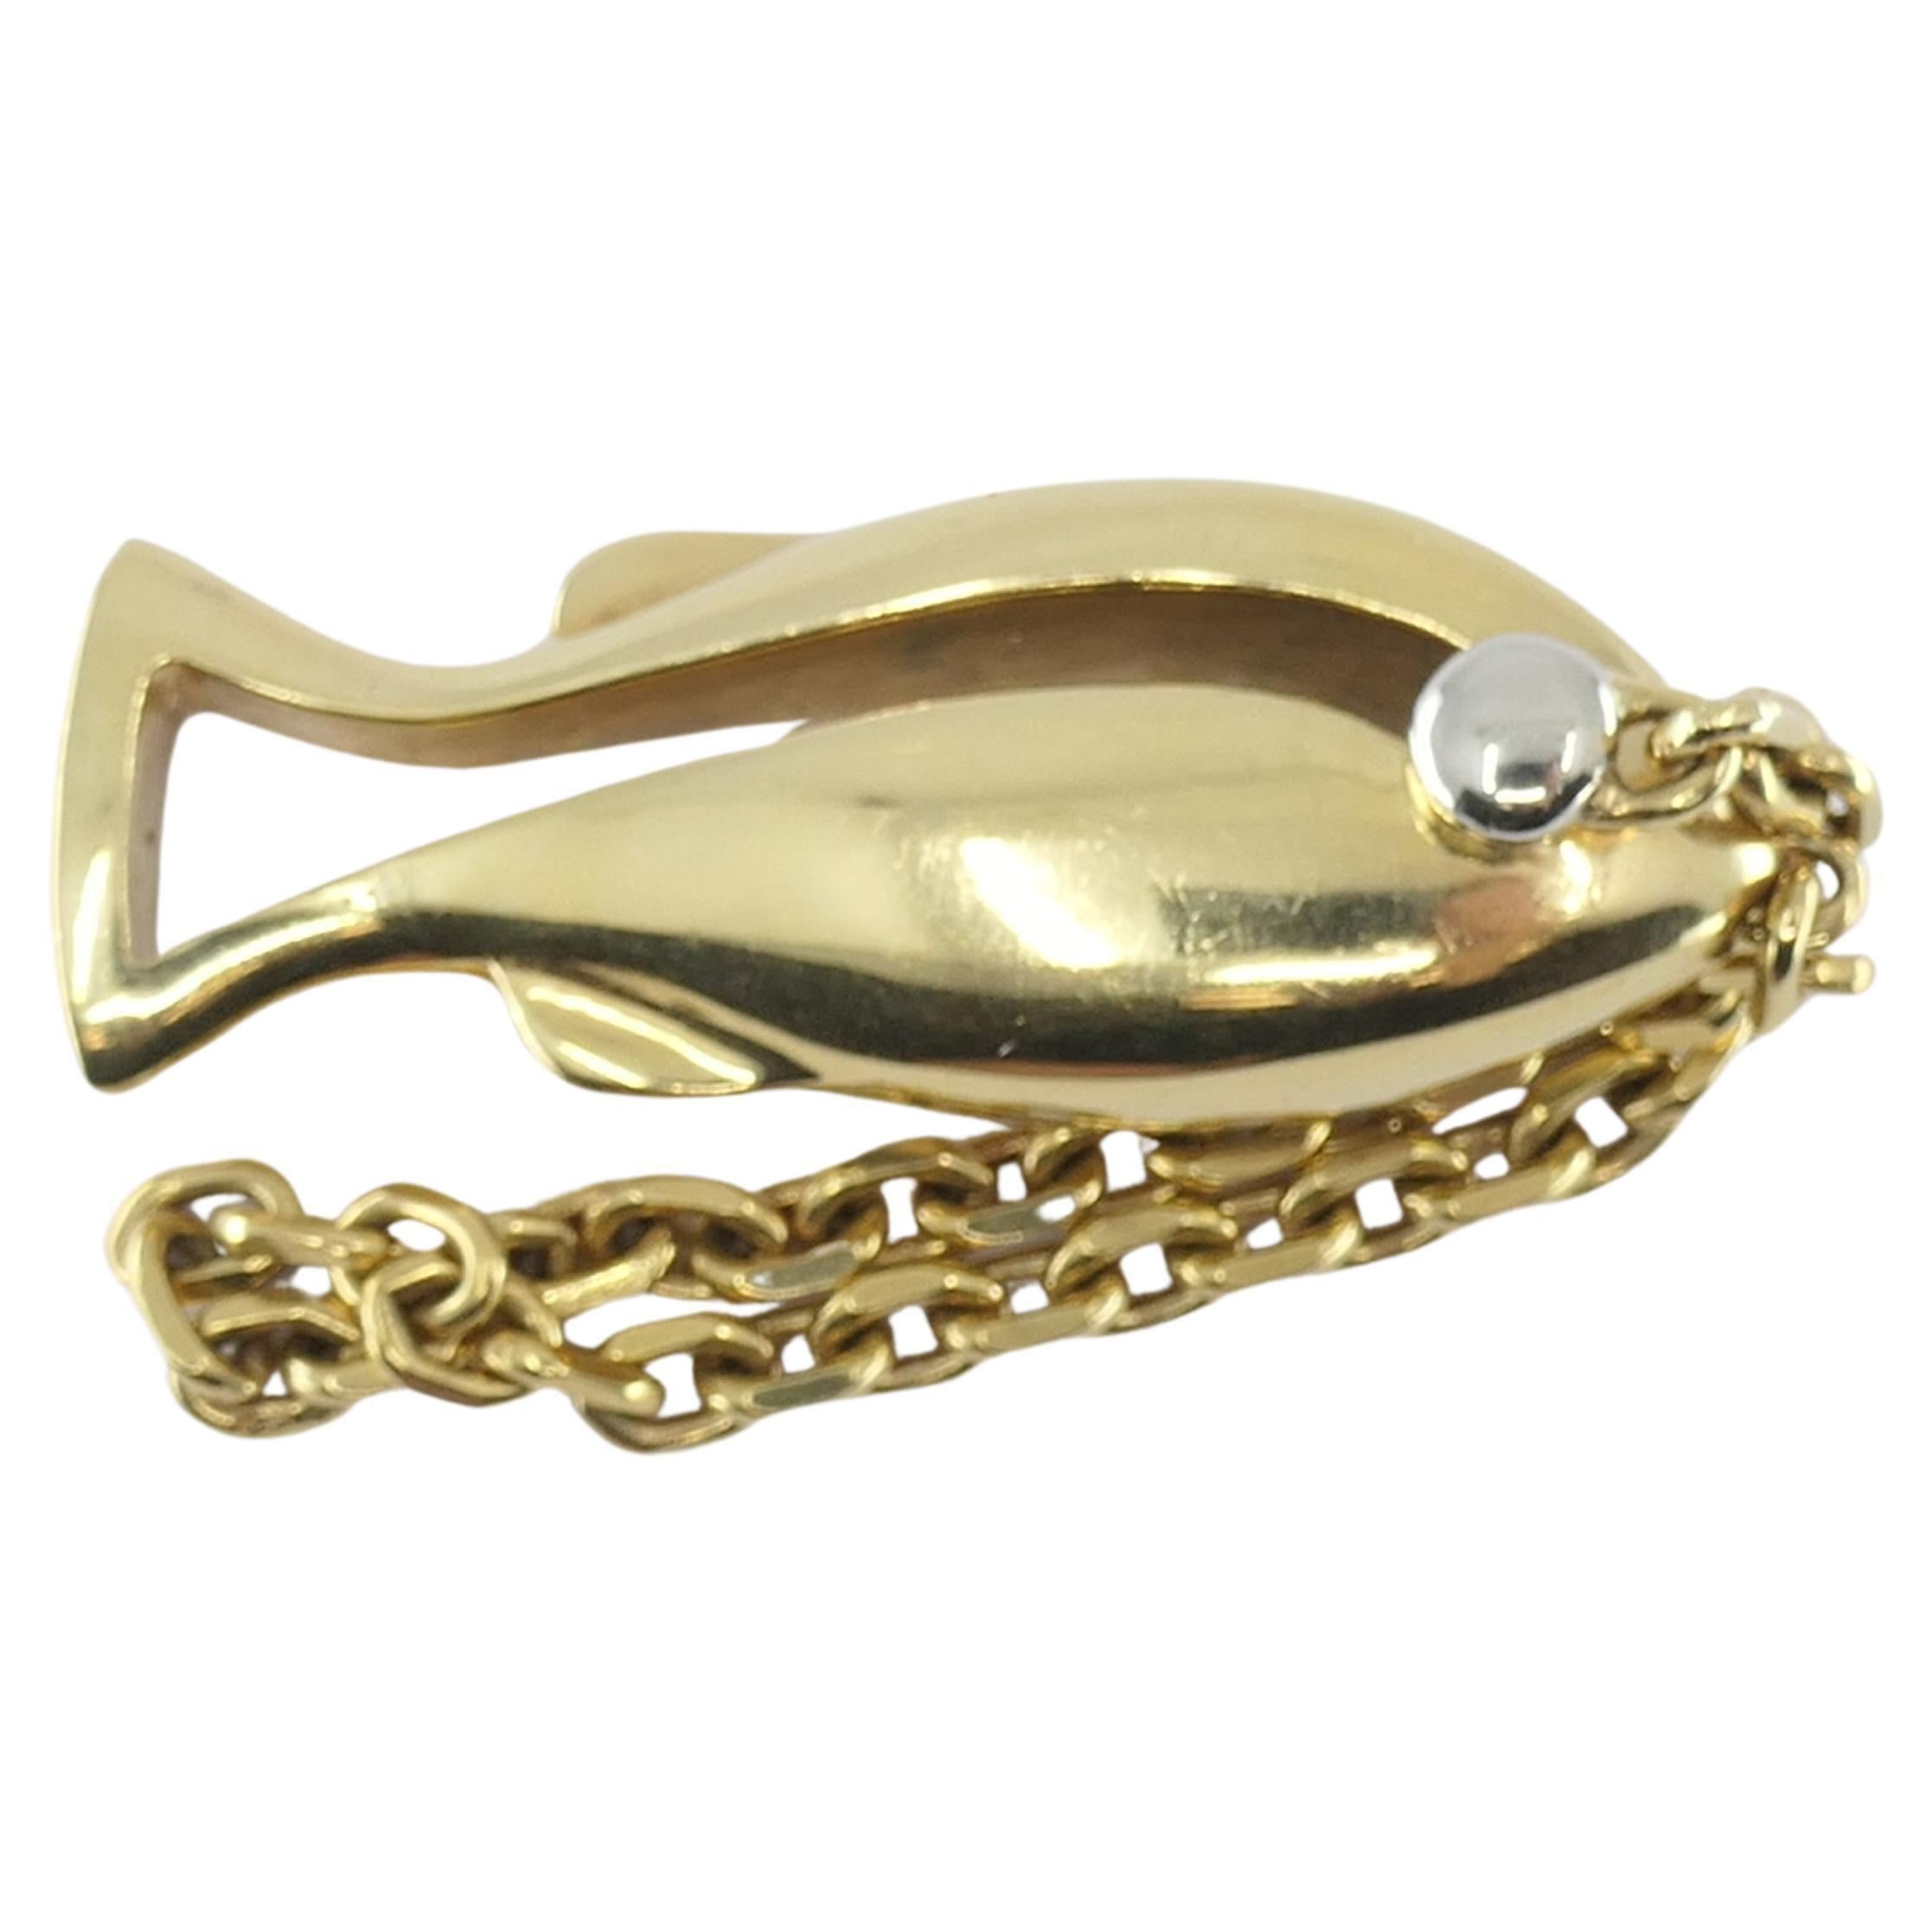 Schlüsselanhänger aus 18-karätigem Gold, gesungen von Van Cleef & Arpels.
Der Charme ist als Fisch gestaltet, mit einem durchbrochenen Körper aus Gelbgold und Augen, die mit Weißgold akzentuiert sind. Es ist ein niedliches und zugleich stilvolles